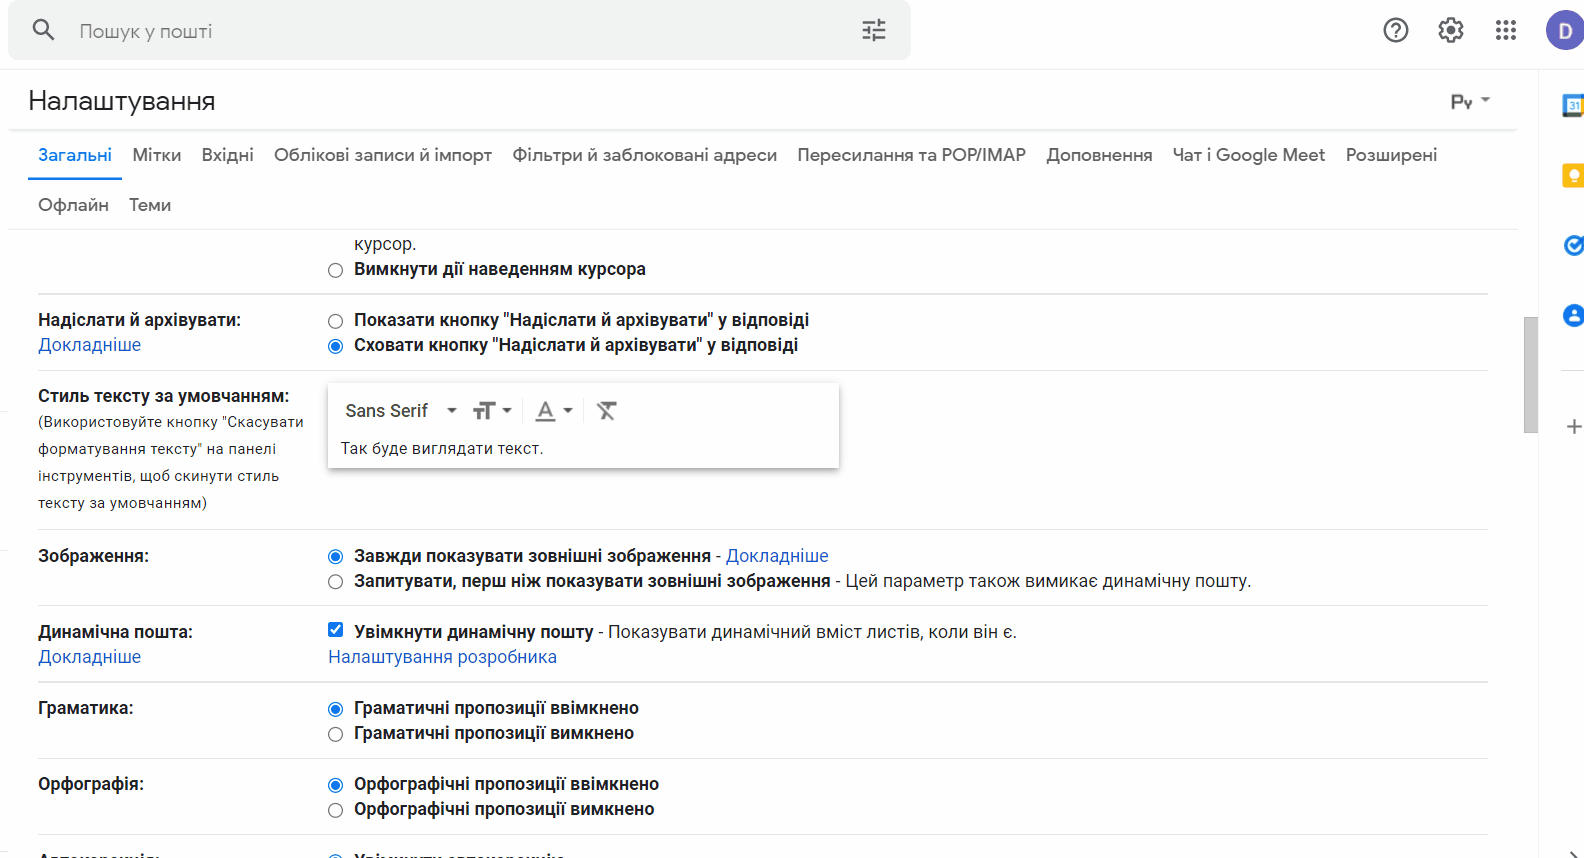 Додавання email до списку довірених адрес Gmail